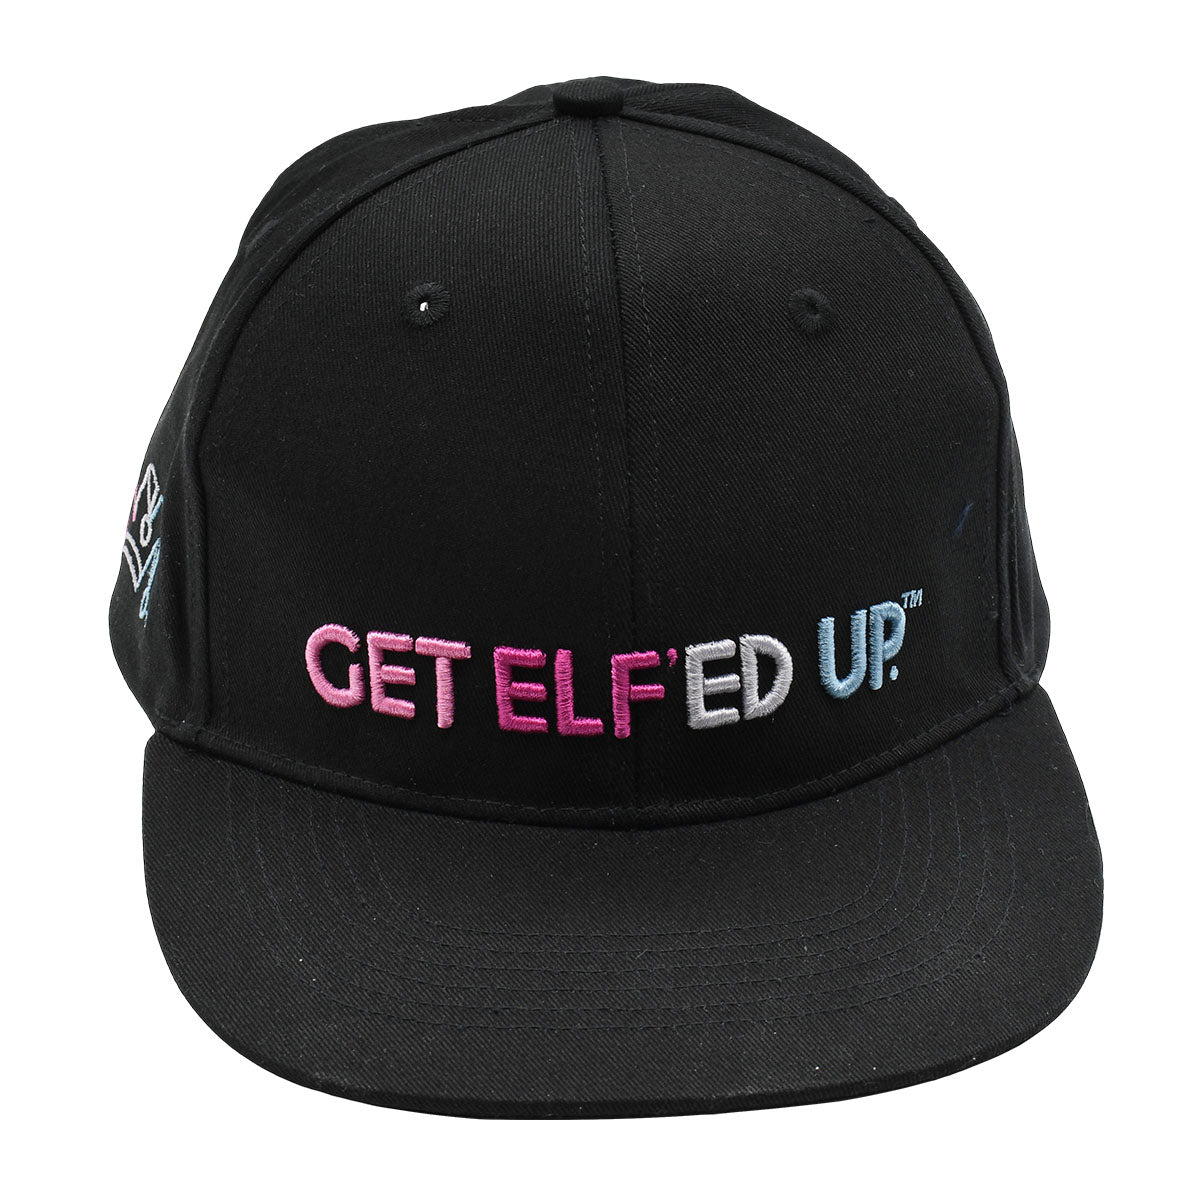 Get Elf'ed Up -  Flat Bill Sport Hat